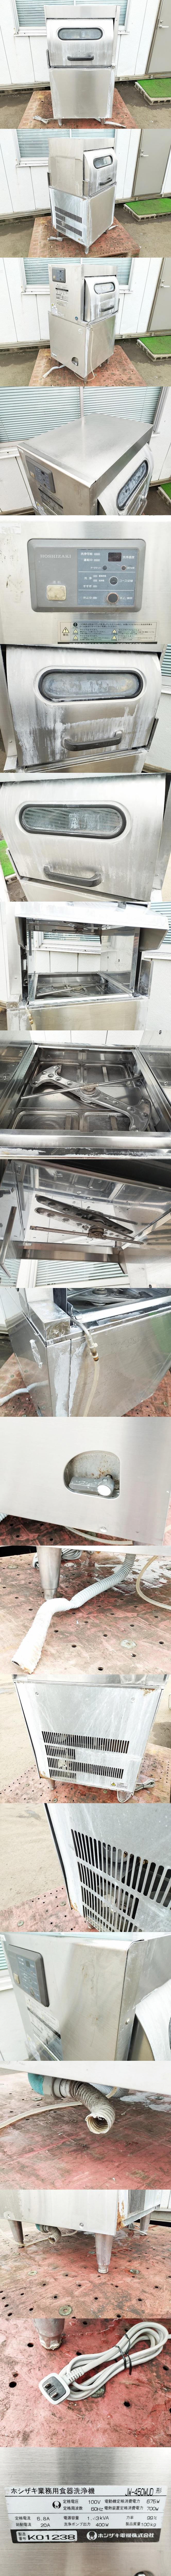 ホシザキ電機 業務用食器洗浄機 JW-450MUD 厨房機器 ジャンク